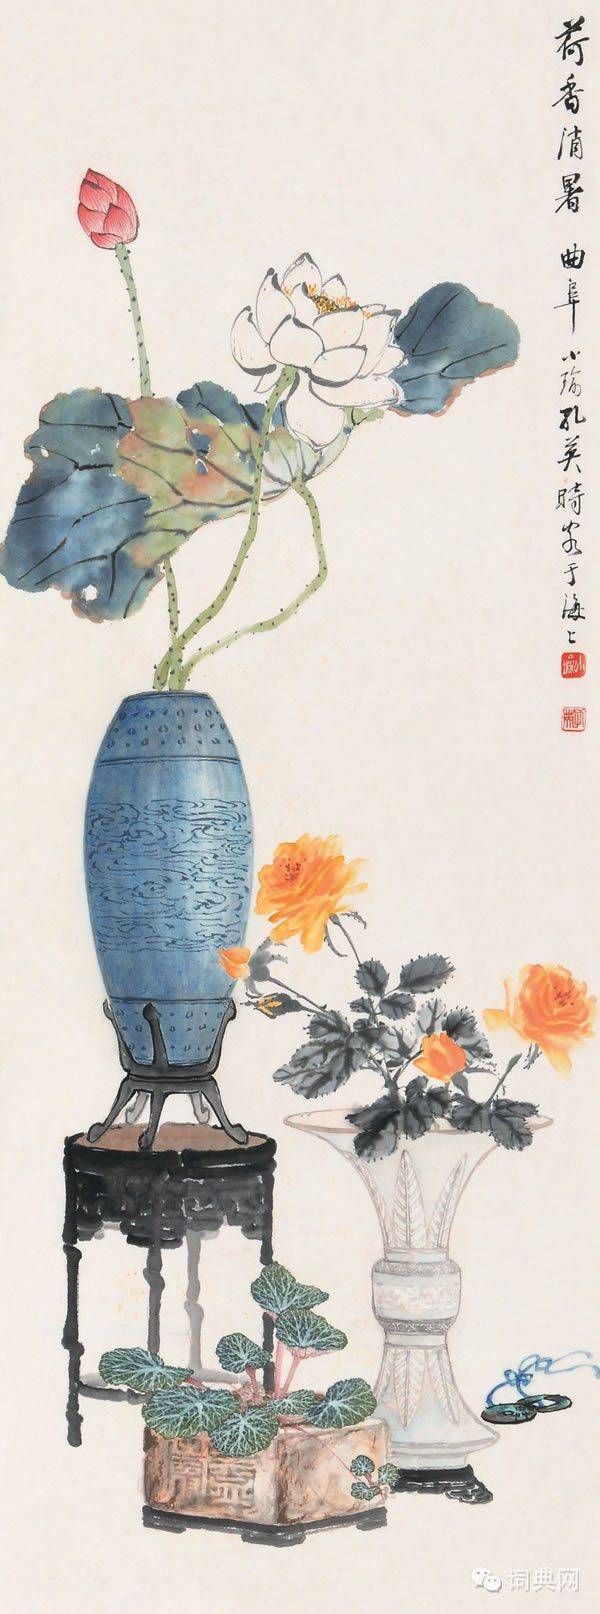 中国传统工笔博古画欣赏